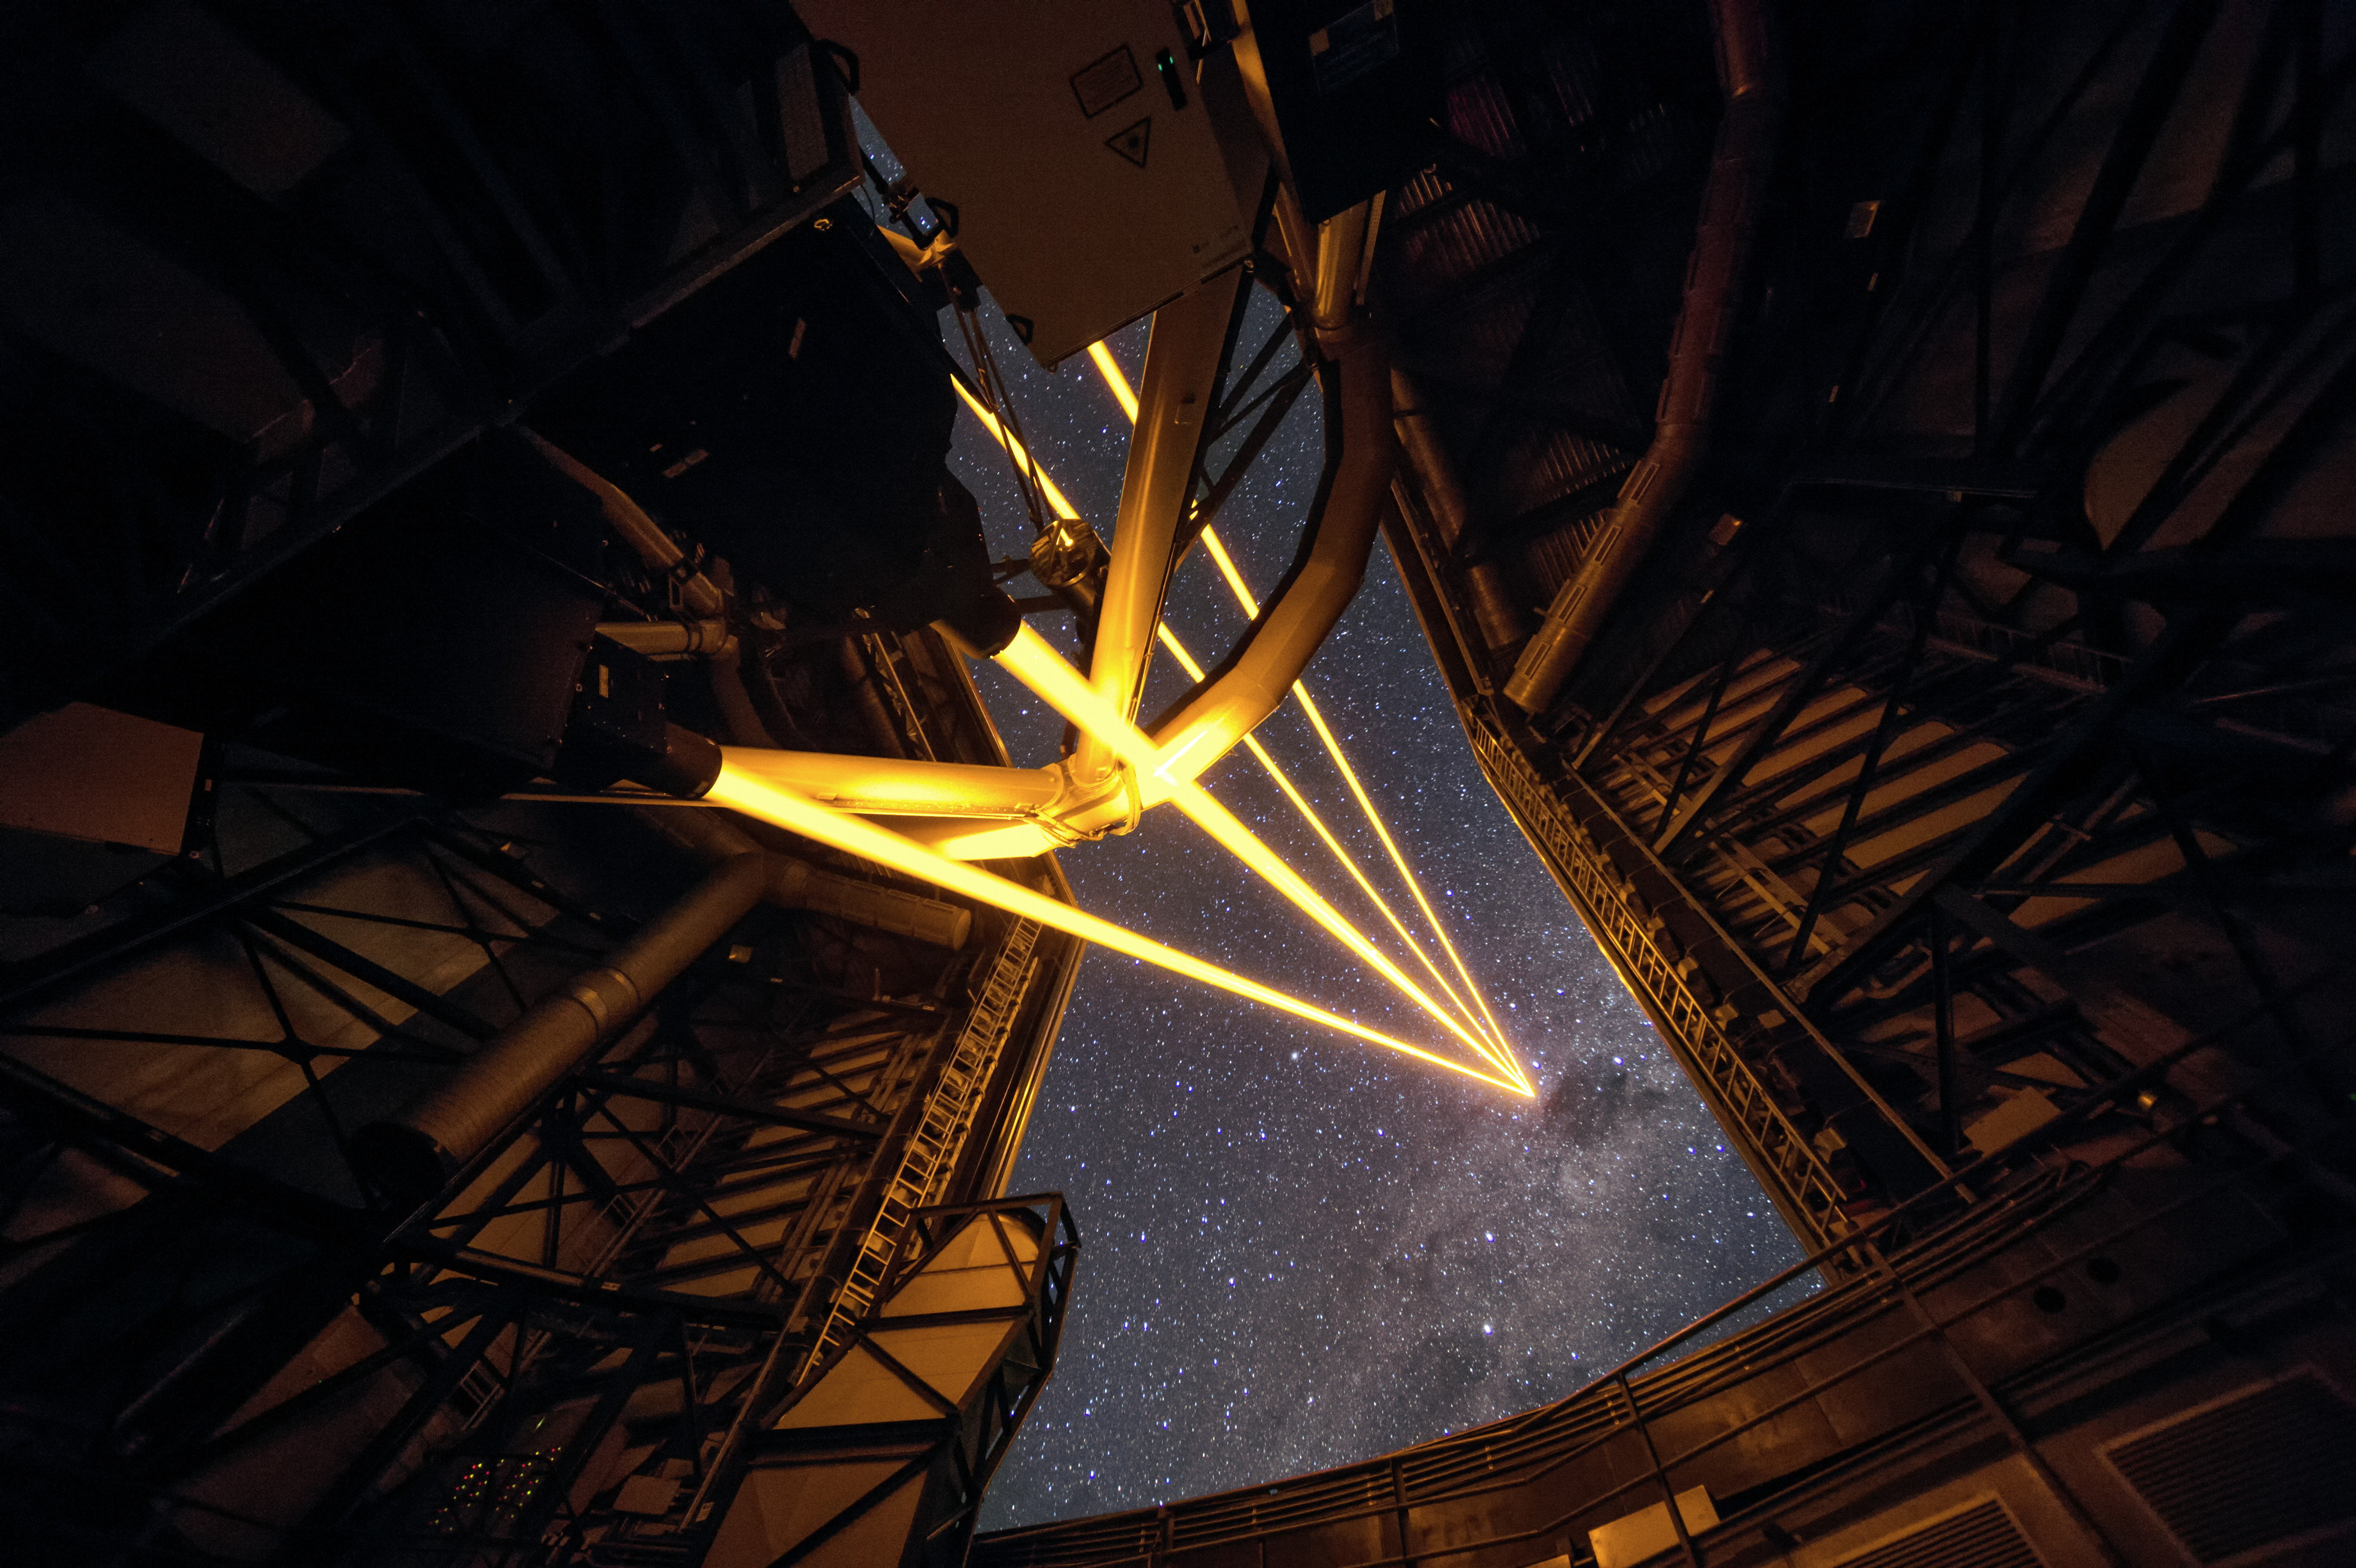 Quatre lasers sur un télescope pour fabriquer des fausses étoiles dans l’atmosphère